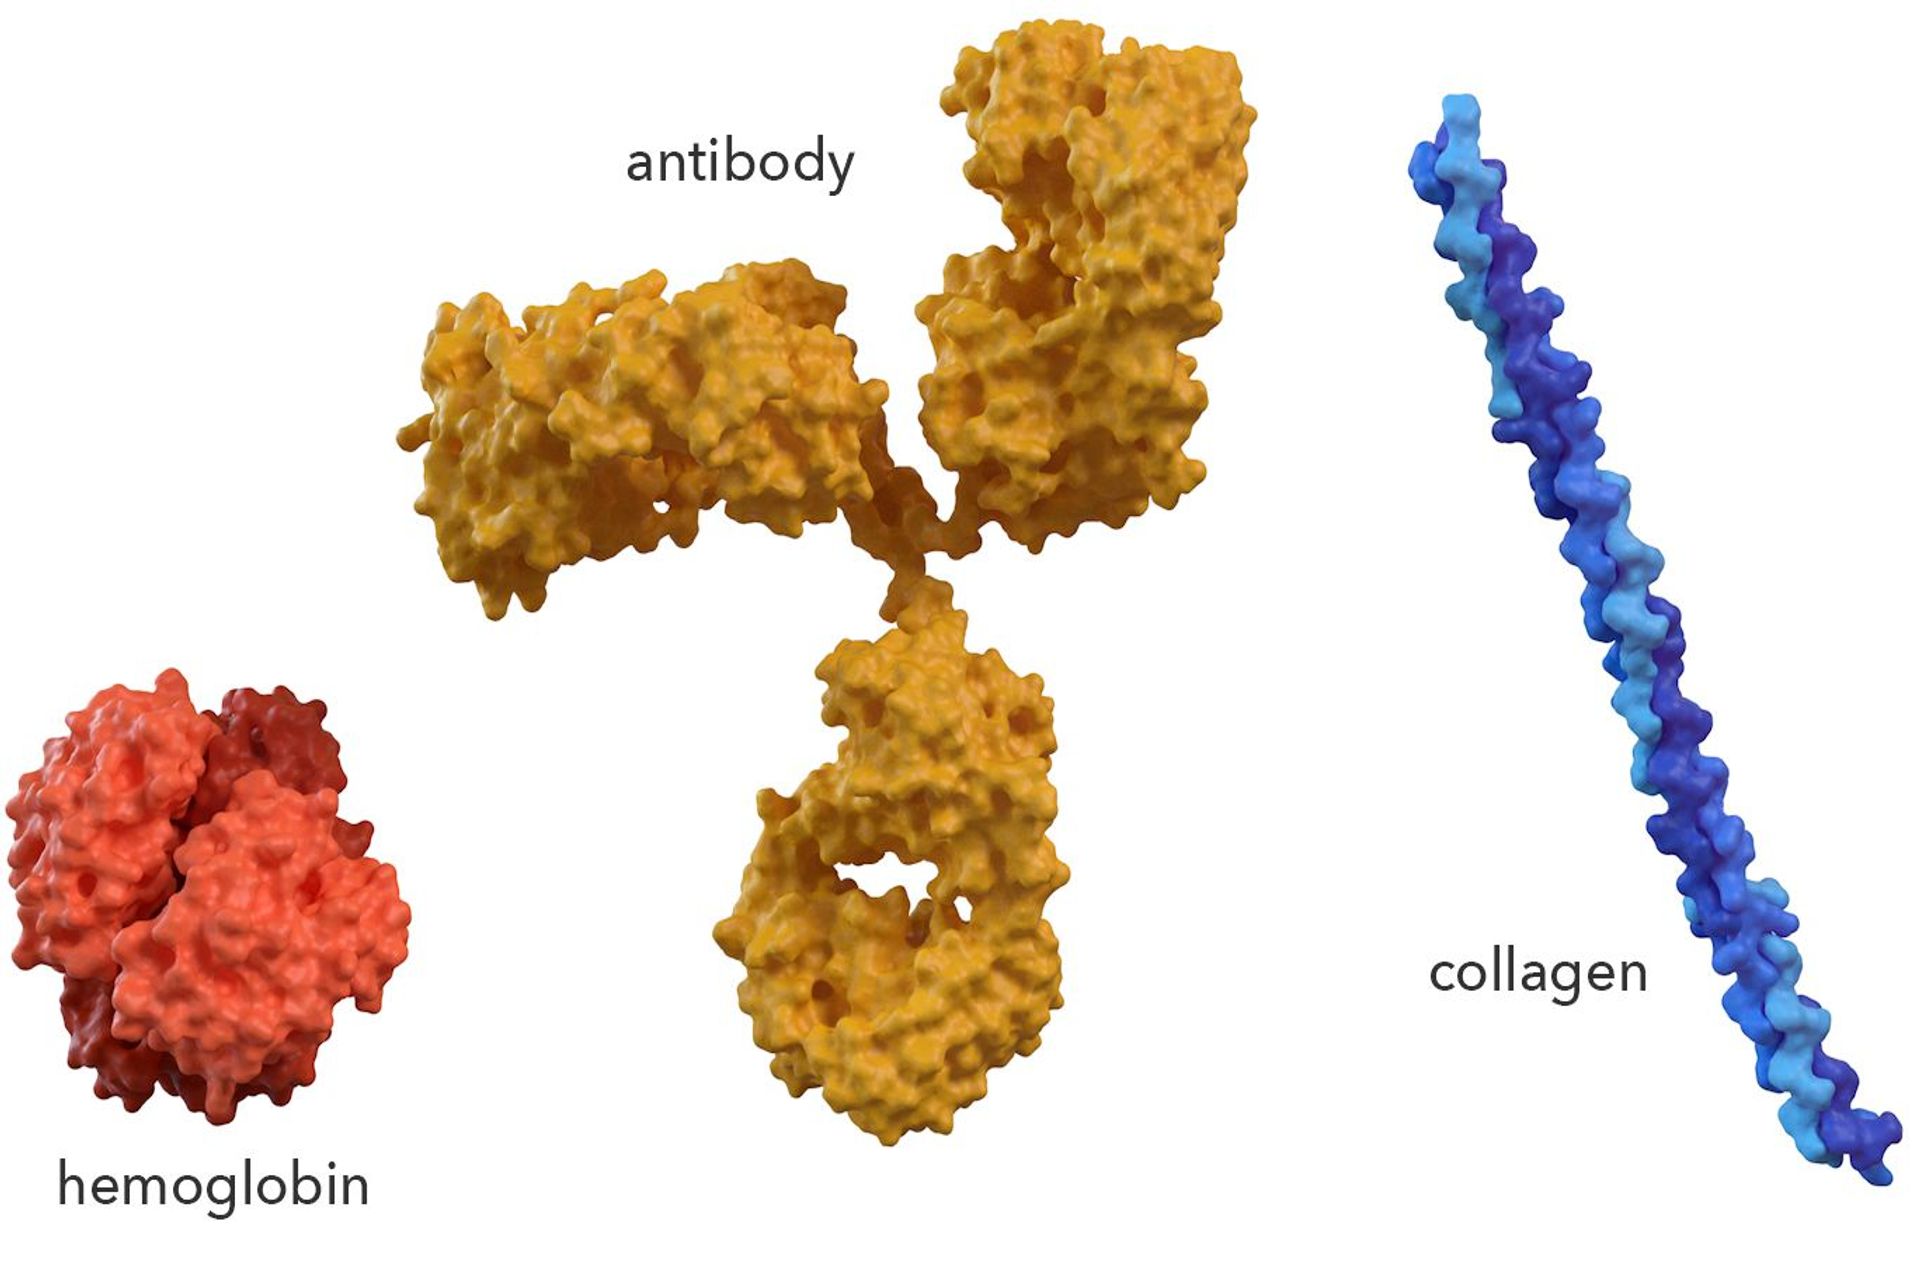 Emoglobina, anticorpo e collagene: la forma tridimensionale di una proteina è unicamente adatta alla sua funzione, tanto che venti diversi blocchi di amminoacidi possono essere disposti in modi differenti per formare un assortimento quasi infinito di forme proteiche